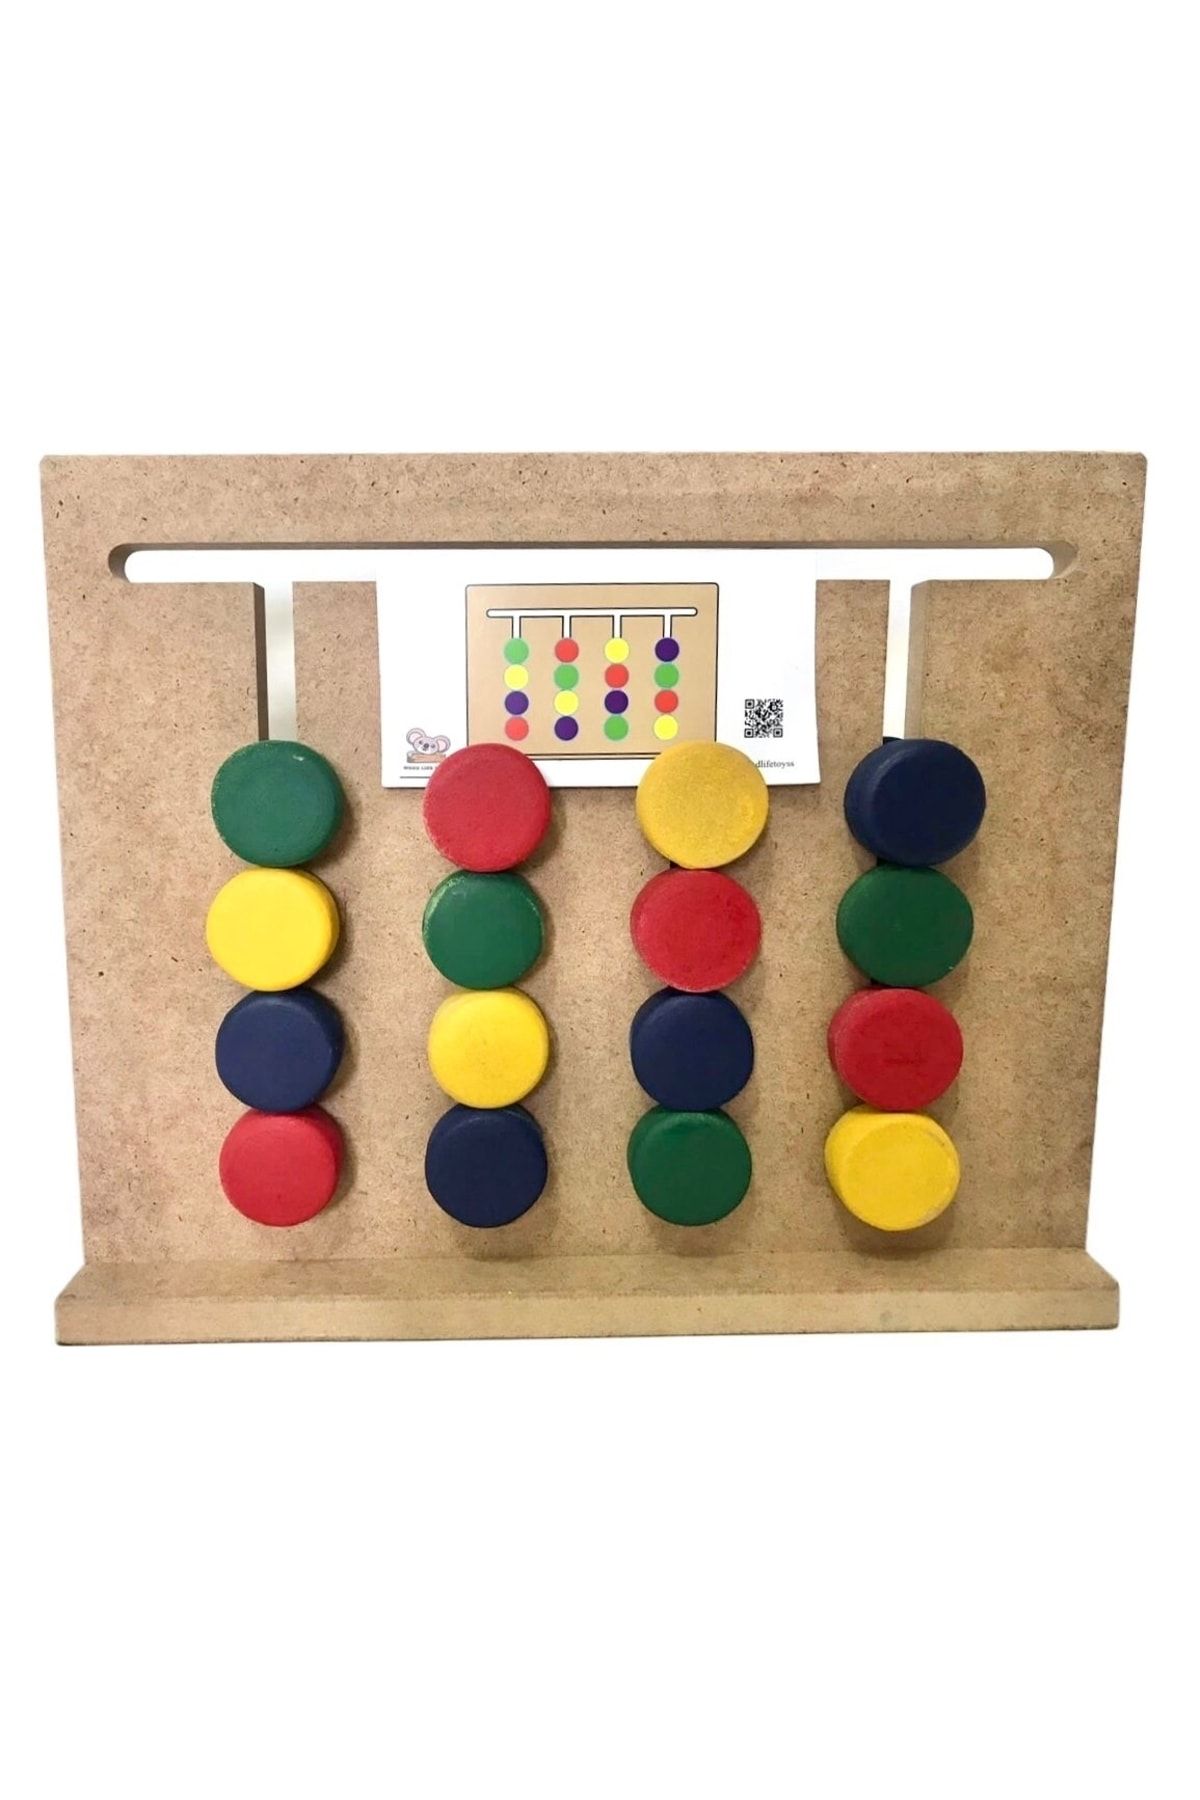 WOODANDLİFE Montessori Zeka Oyunu Rubik Abaküs 4 Renk Eşleştirme